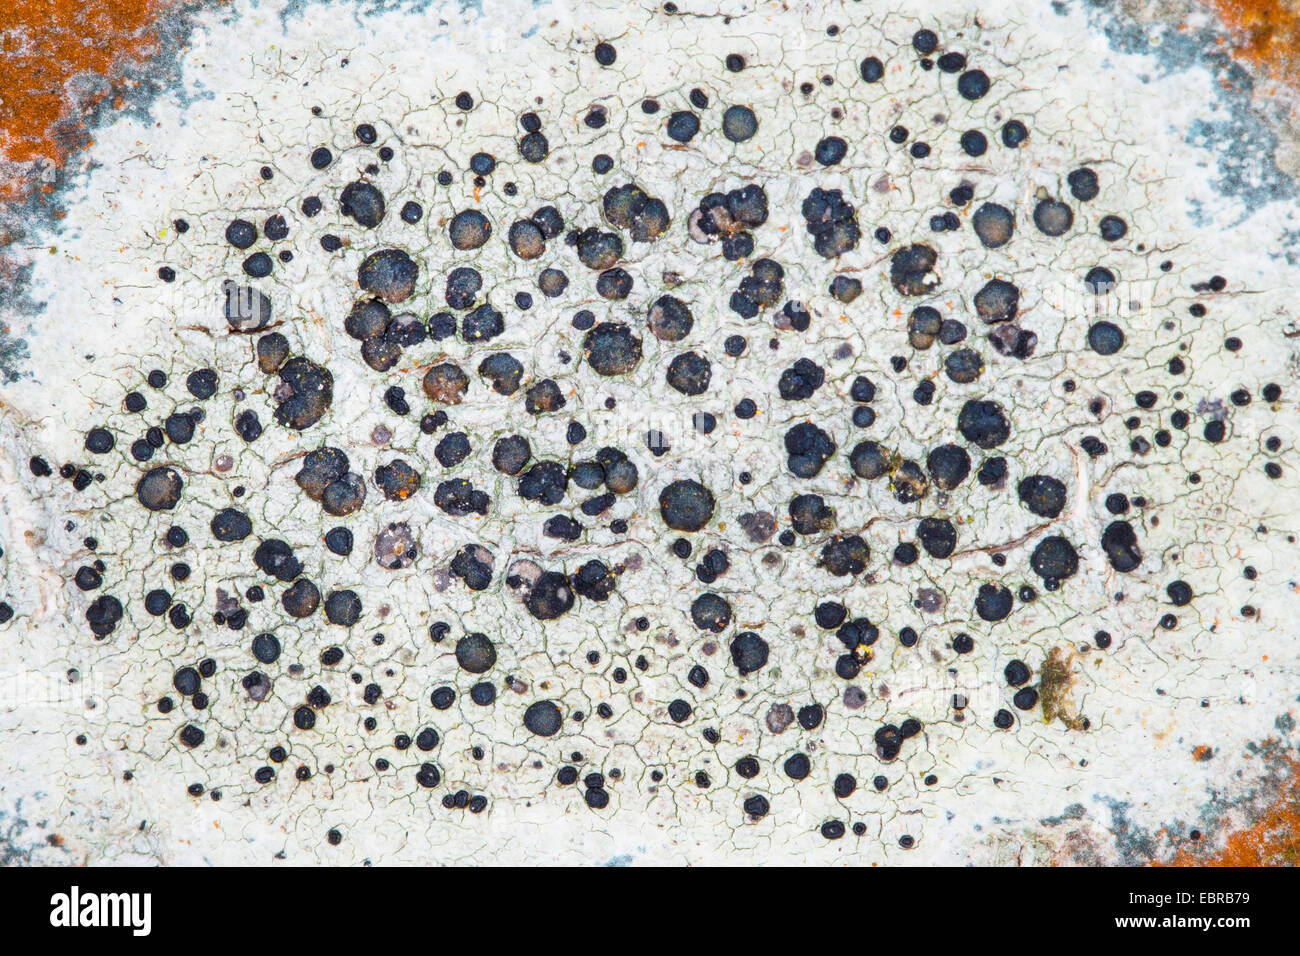 crustose lichen (Lecidella elaeochroma, Lecidella olivacea), crustose lichen at the stem of an ash , Germany Stock Photo